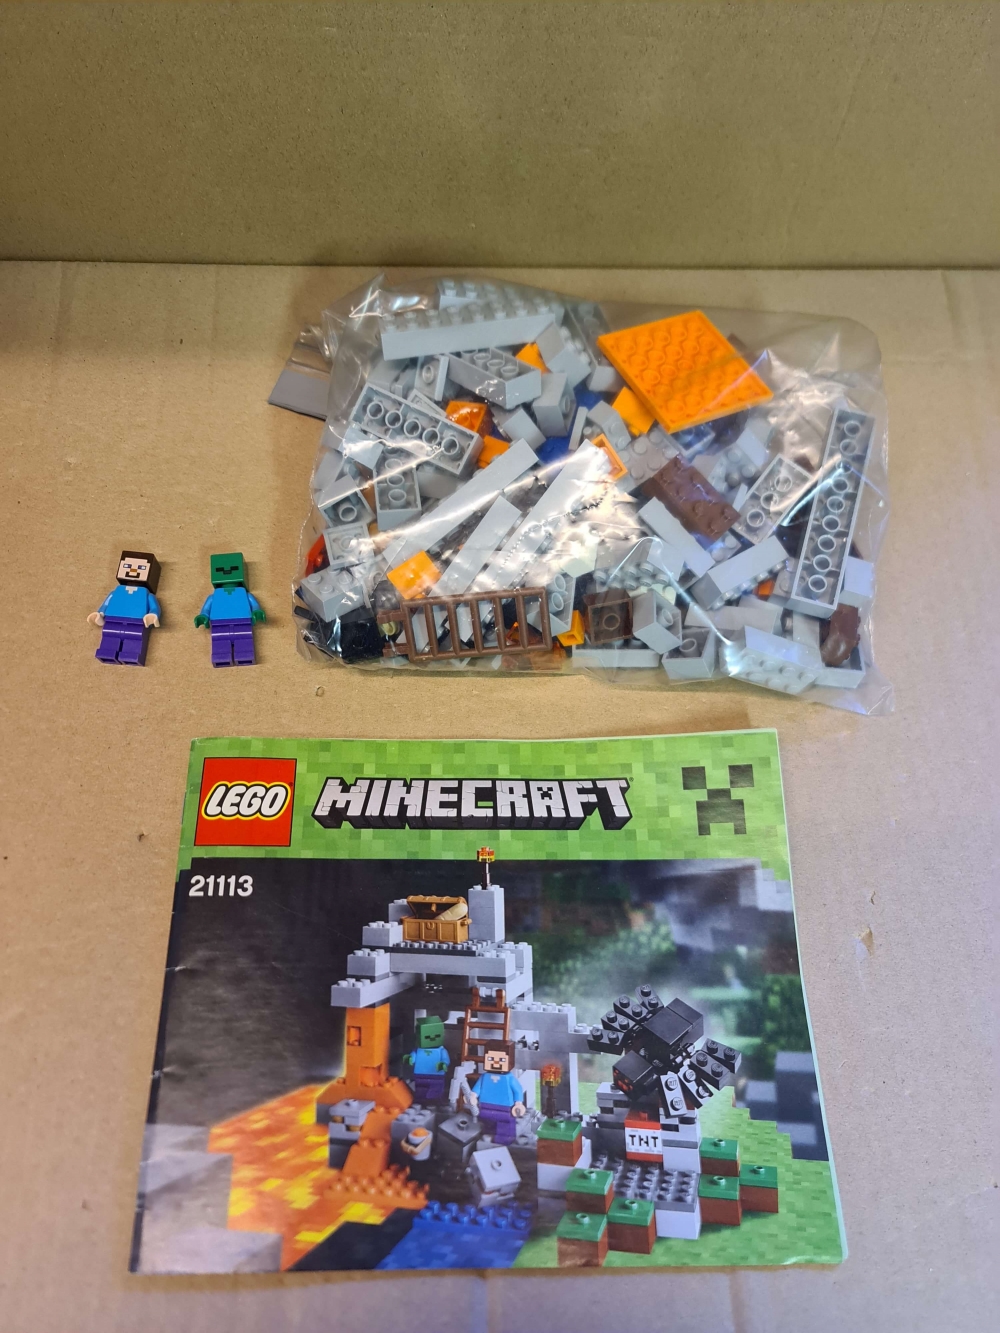 Sett 21113 fra Lego Minecraft serien. 
Meget pent. Komplett med manual.